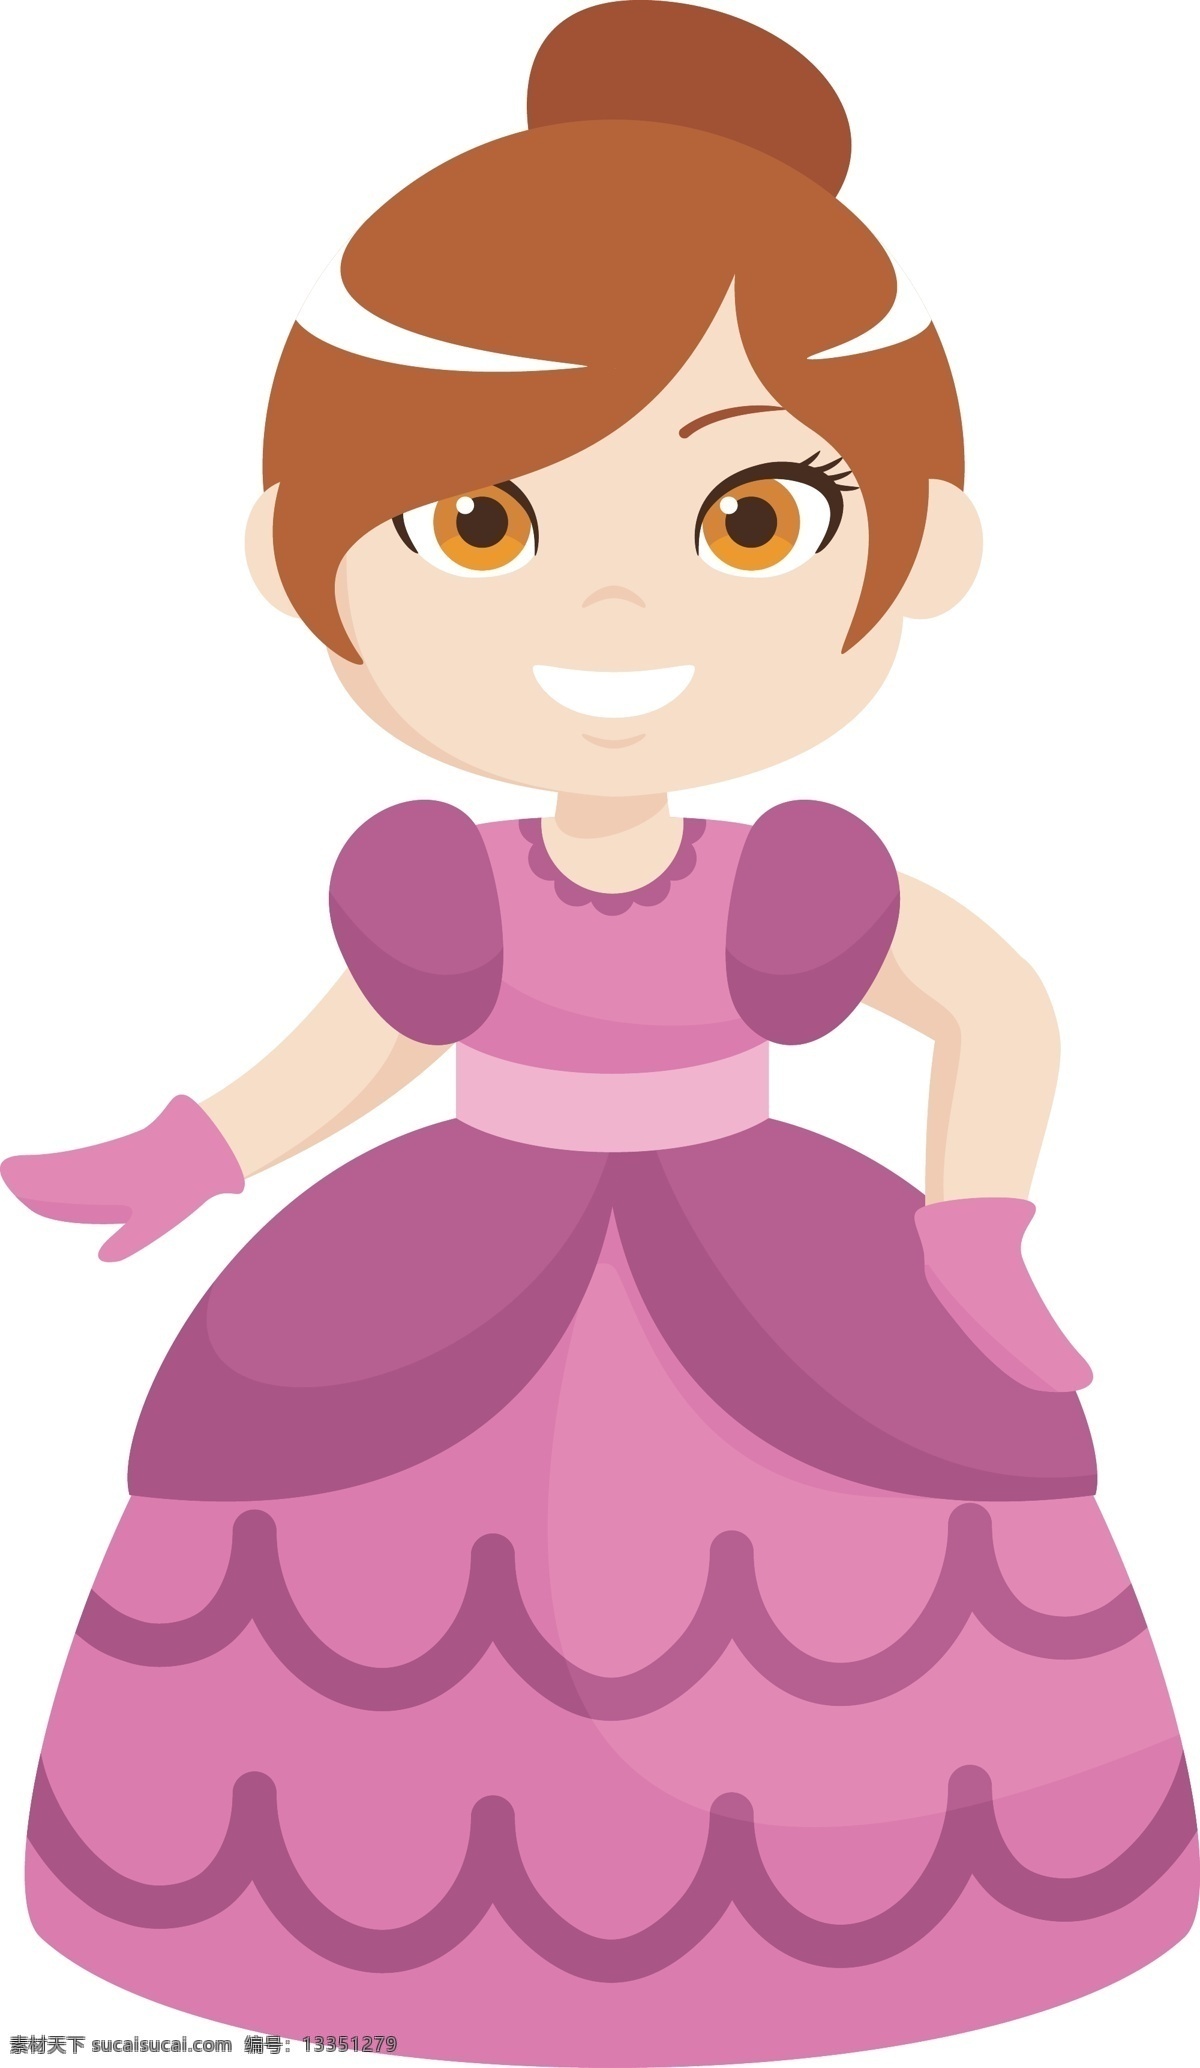 卡通 矢量 身穿 礼服 美丽 公主 卡通矢量 红色礼服 童话世界 公主设计 人物 裙子 童话 插画 王子 城堡 海报